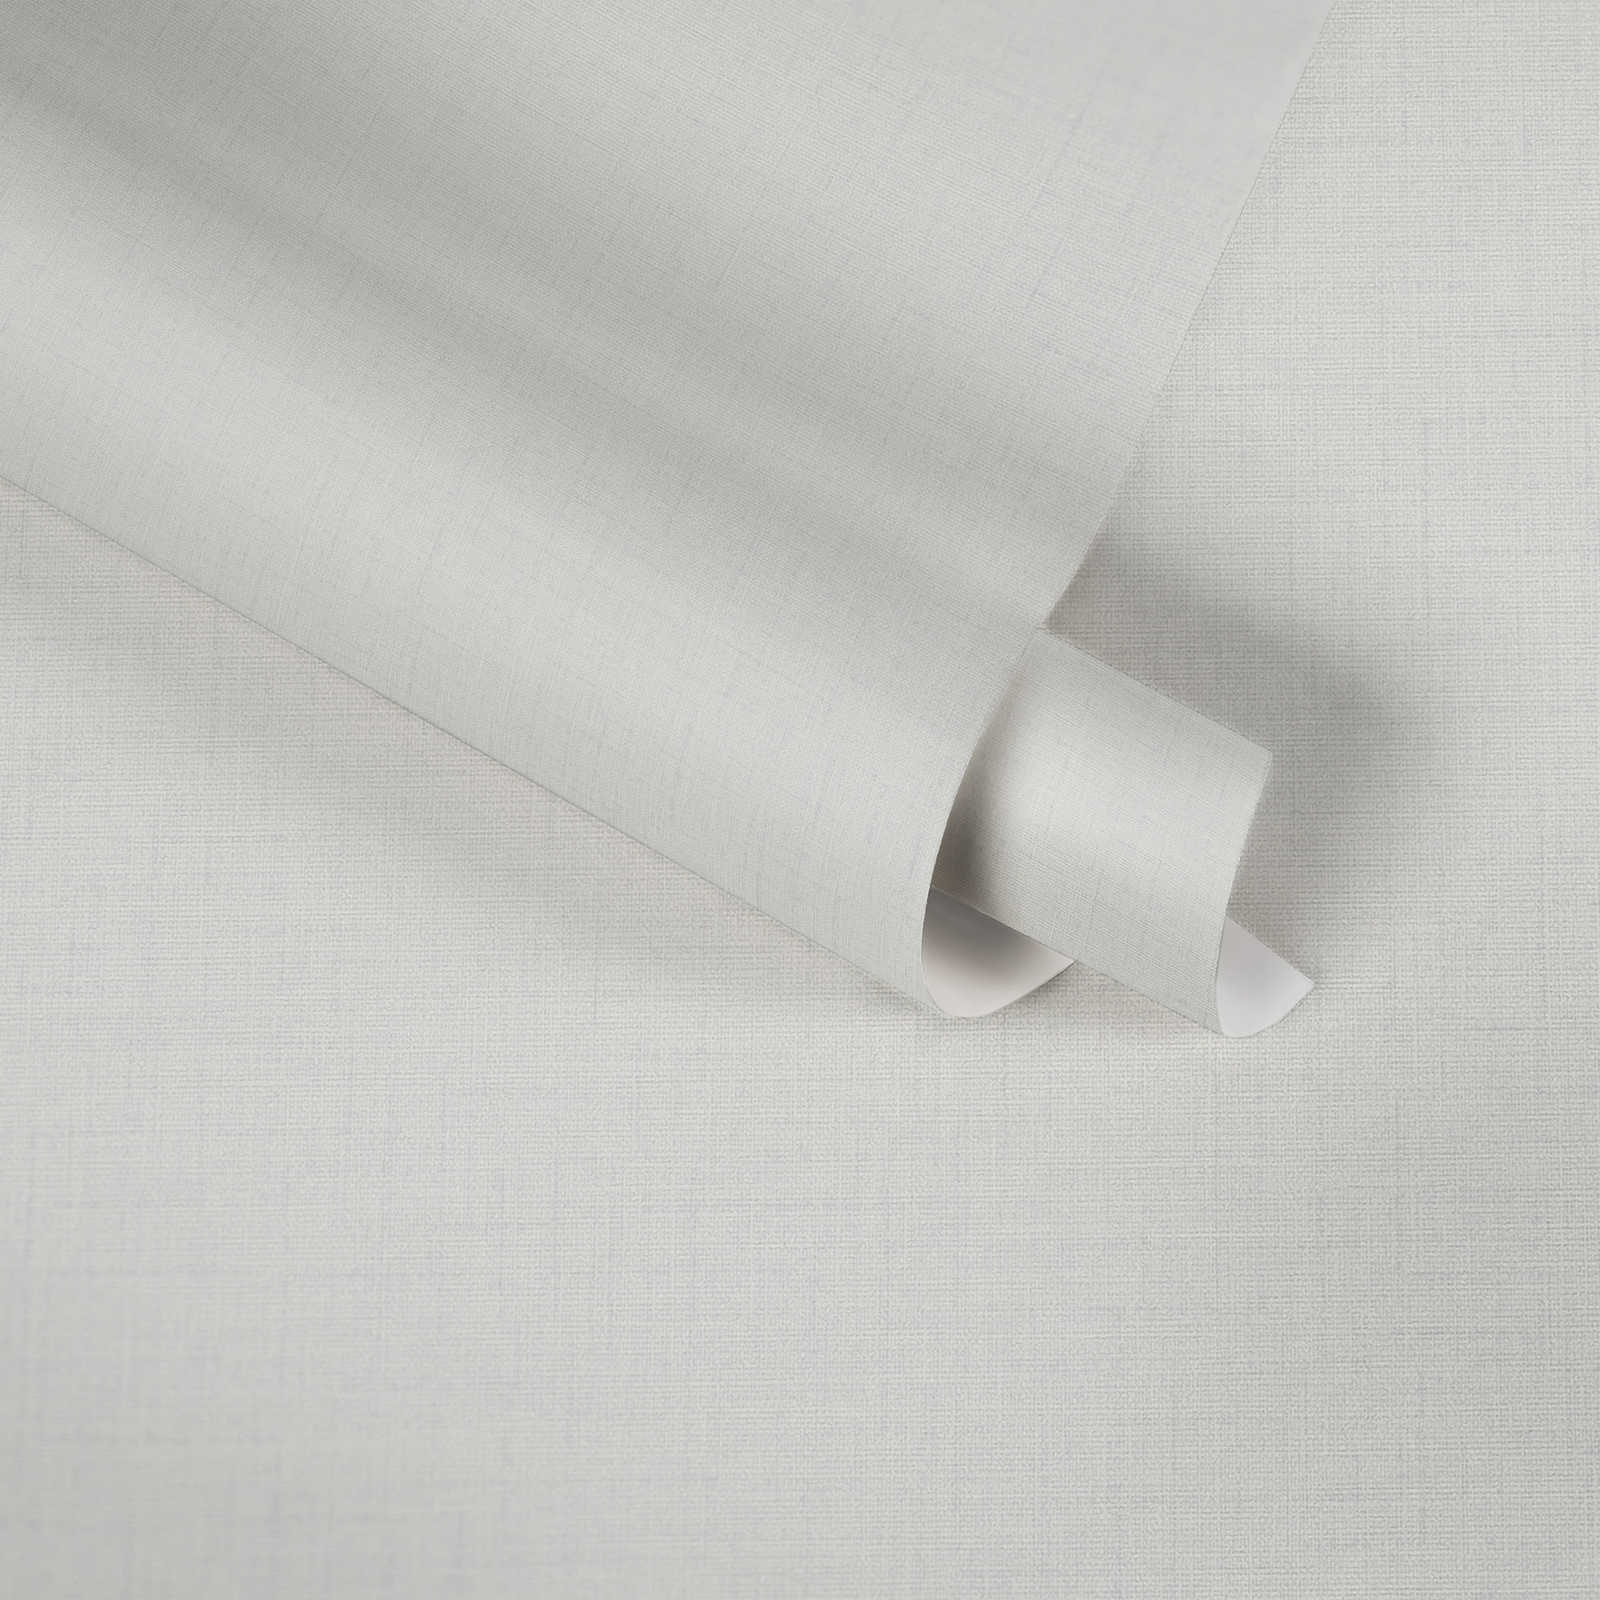             Papel pintado no tejido con aspecto de lino y con textura - gris, blanco
        